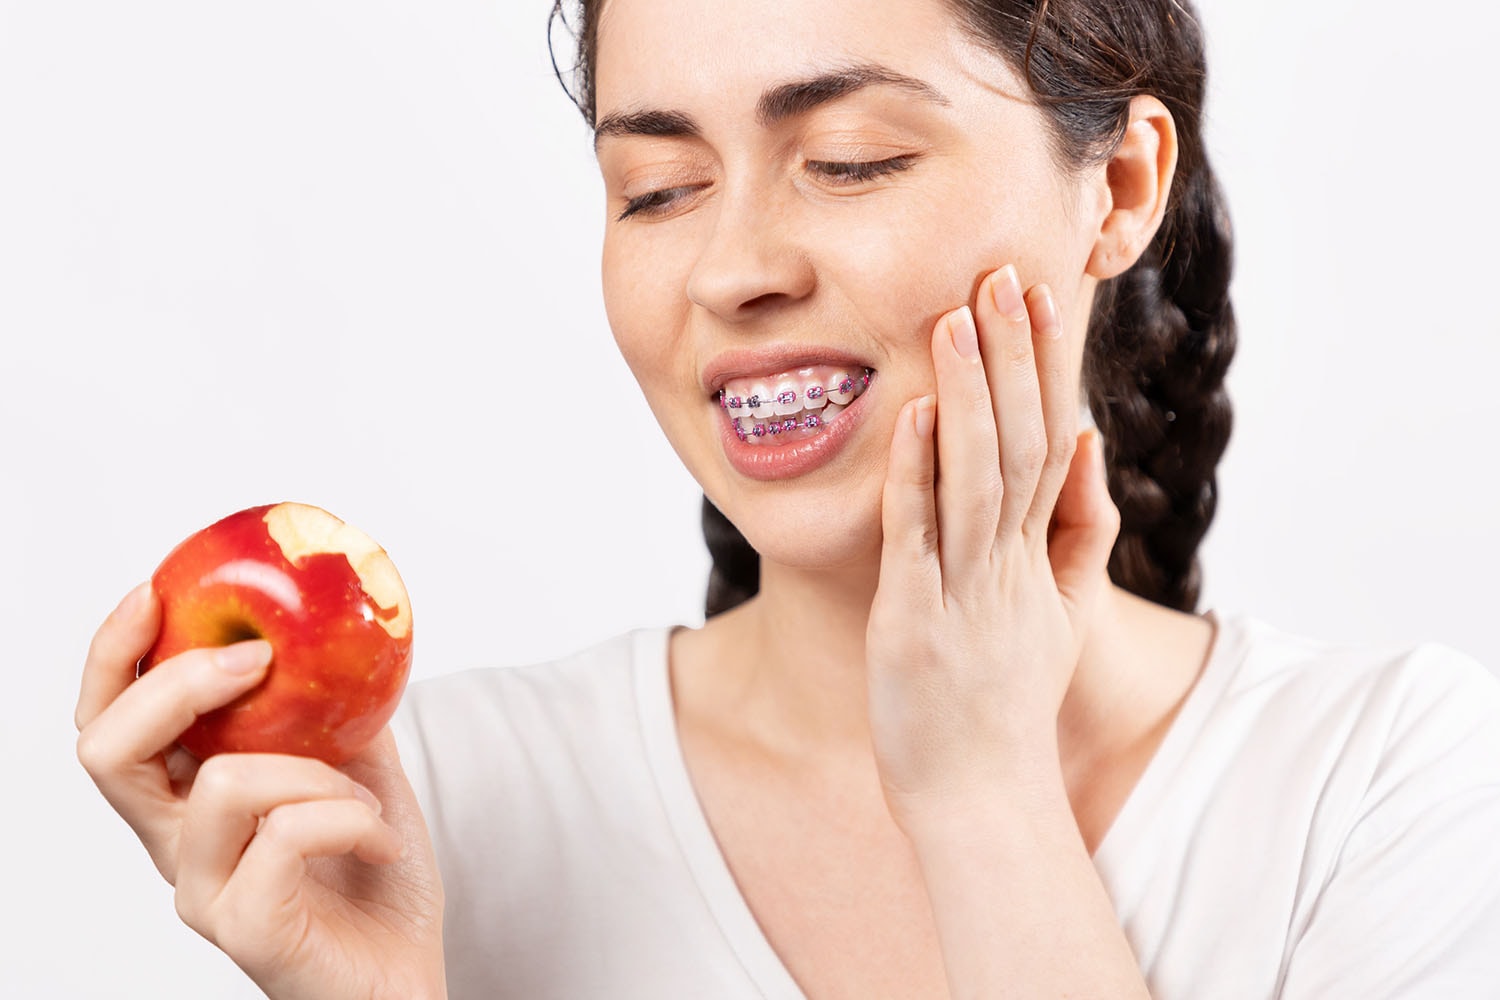 Mädchen mit feste Zahnspangen hat schmerzen nachdem Sie in einen Apfel gebissen hat